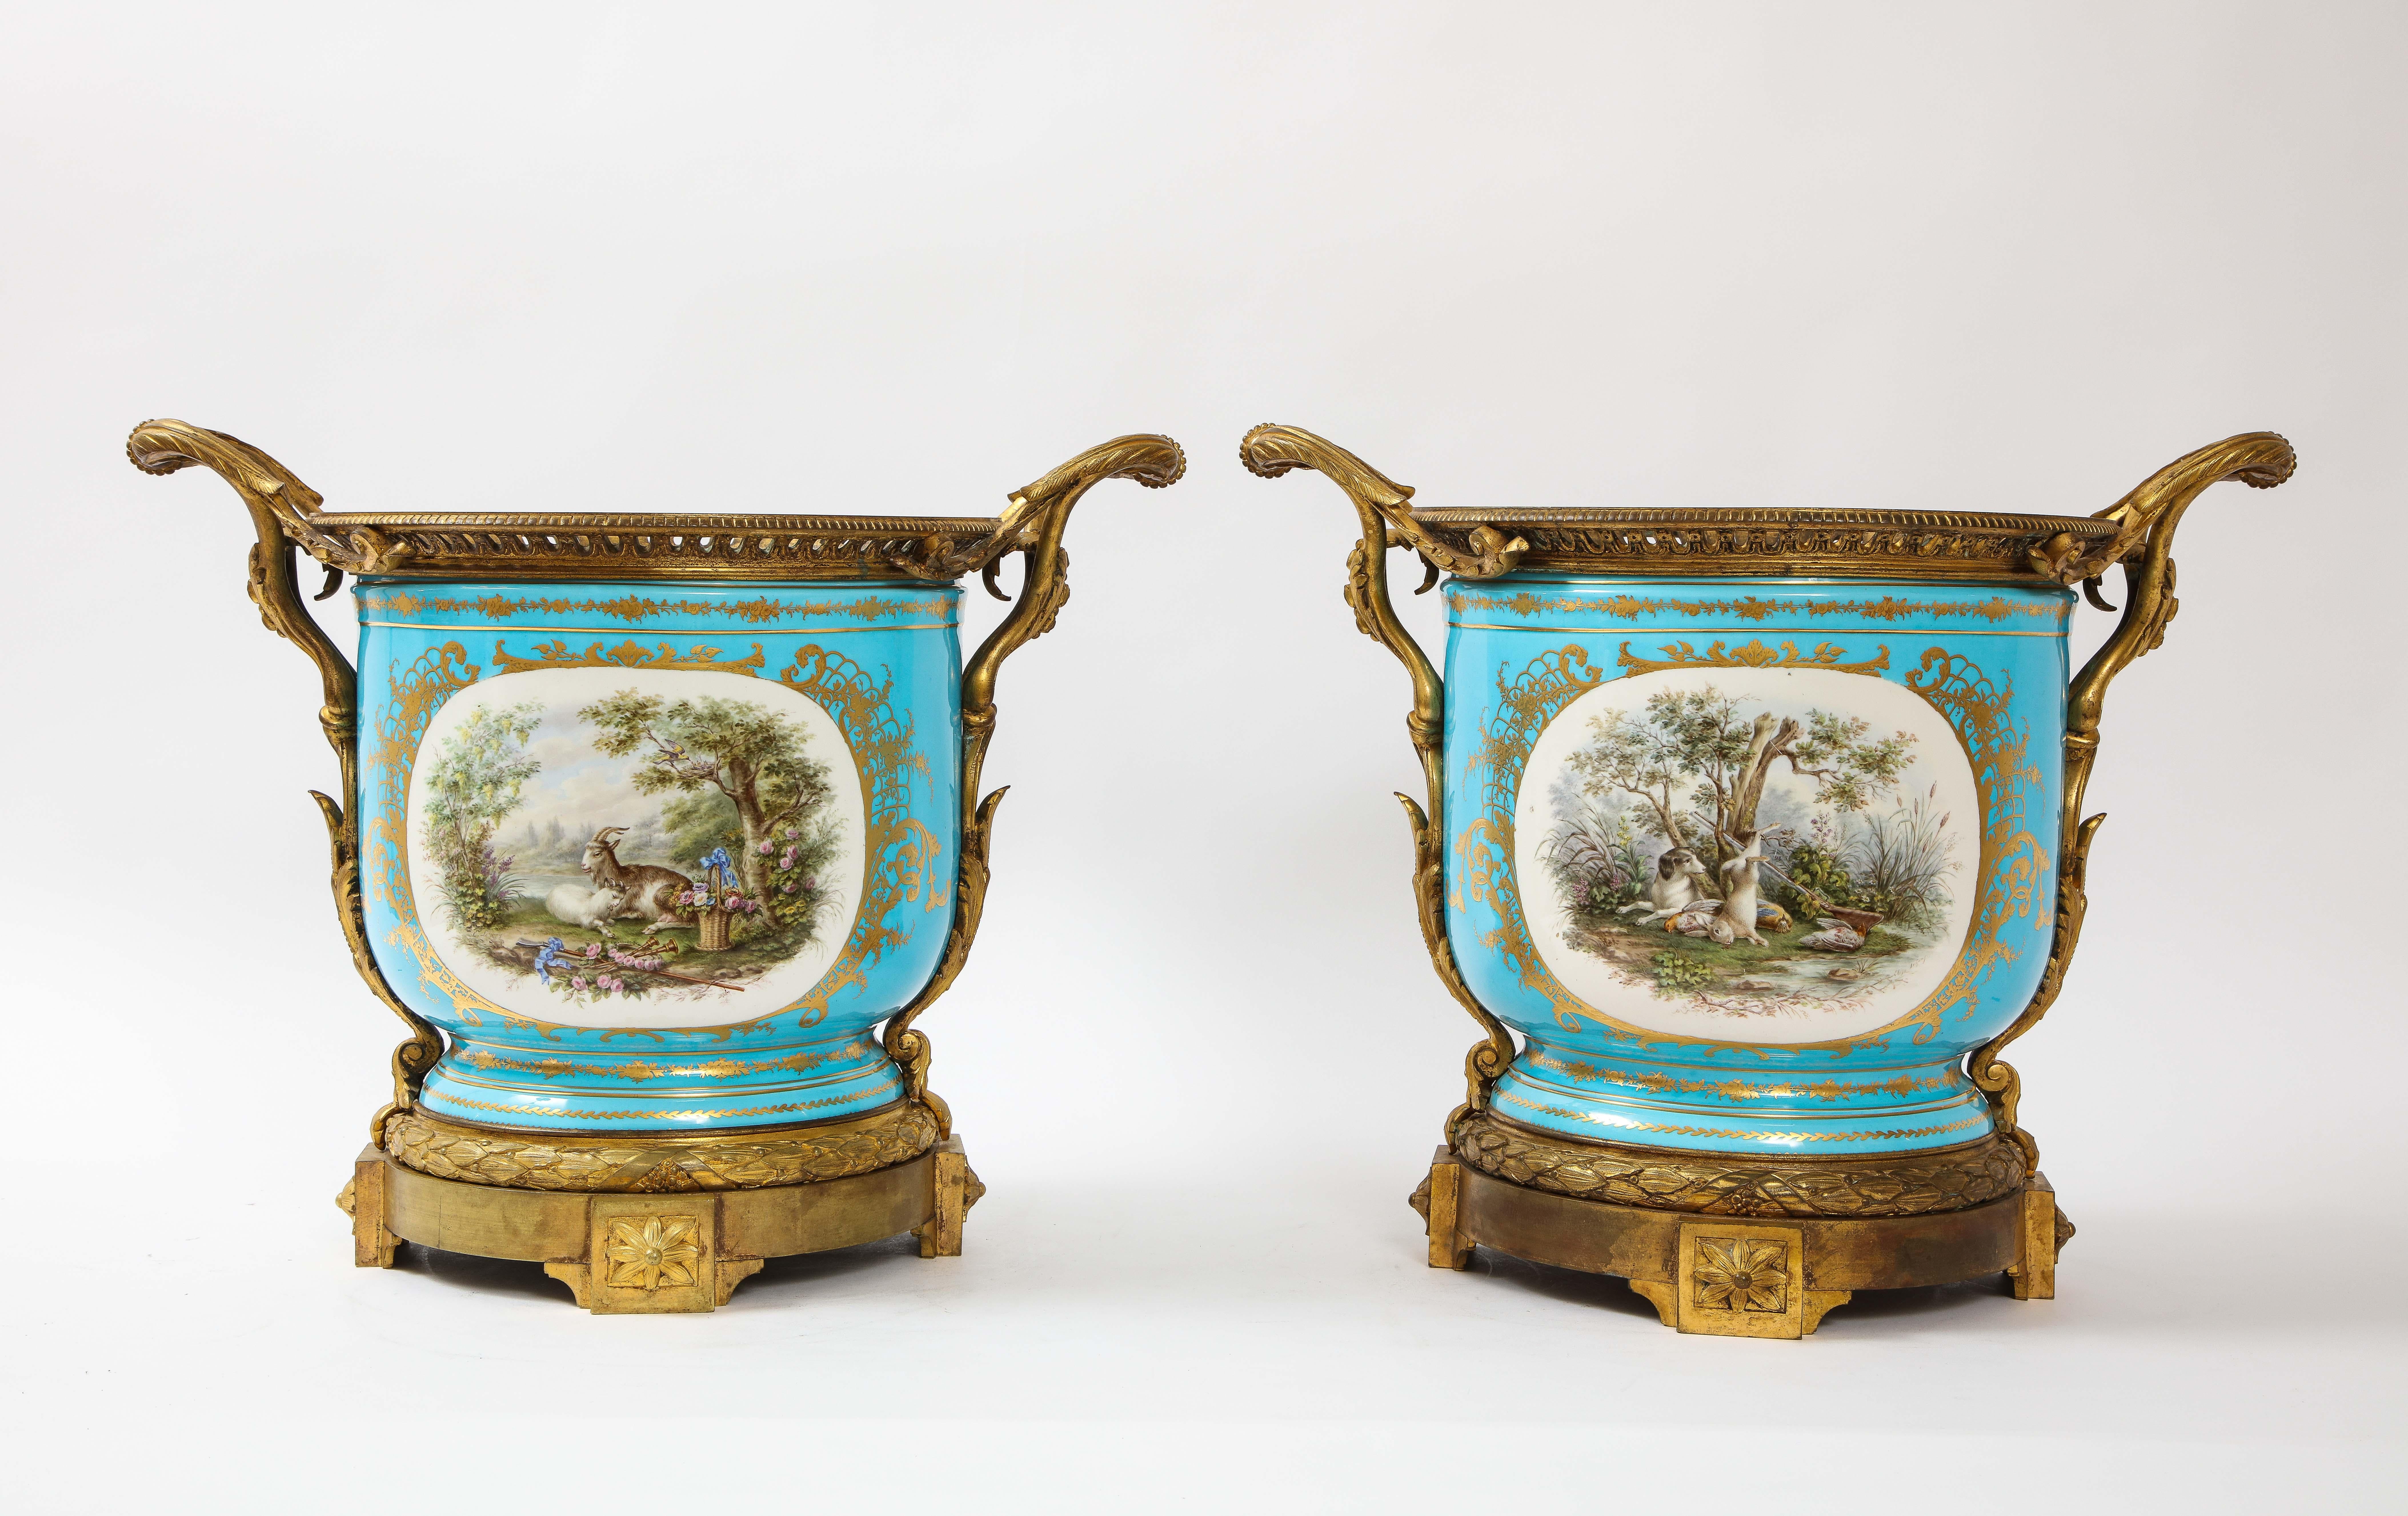 Paire rare et monumentale de cache-pots en porcelaine bleue de Sèvres du XIXe siècle, montés sur bronze doré. Ces cache-pots sont extrêmement rares dans cette taille monumentale. Chacune est peinte à la main sur un fond bleu céleste avec deux côtés